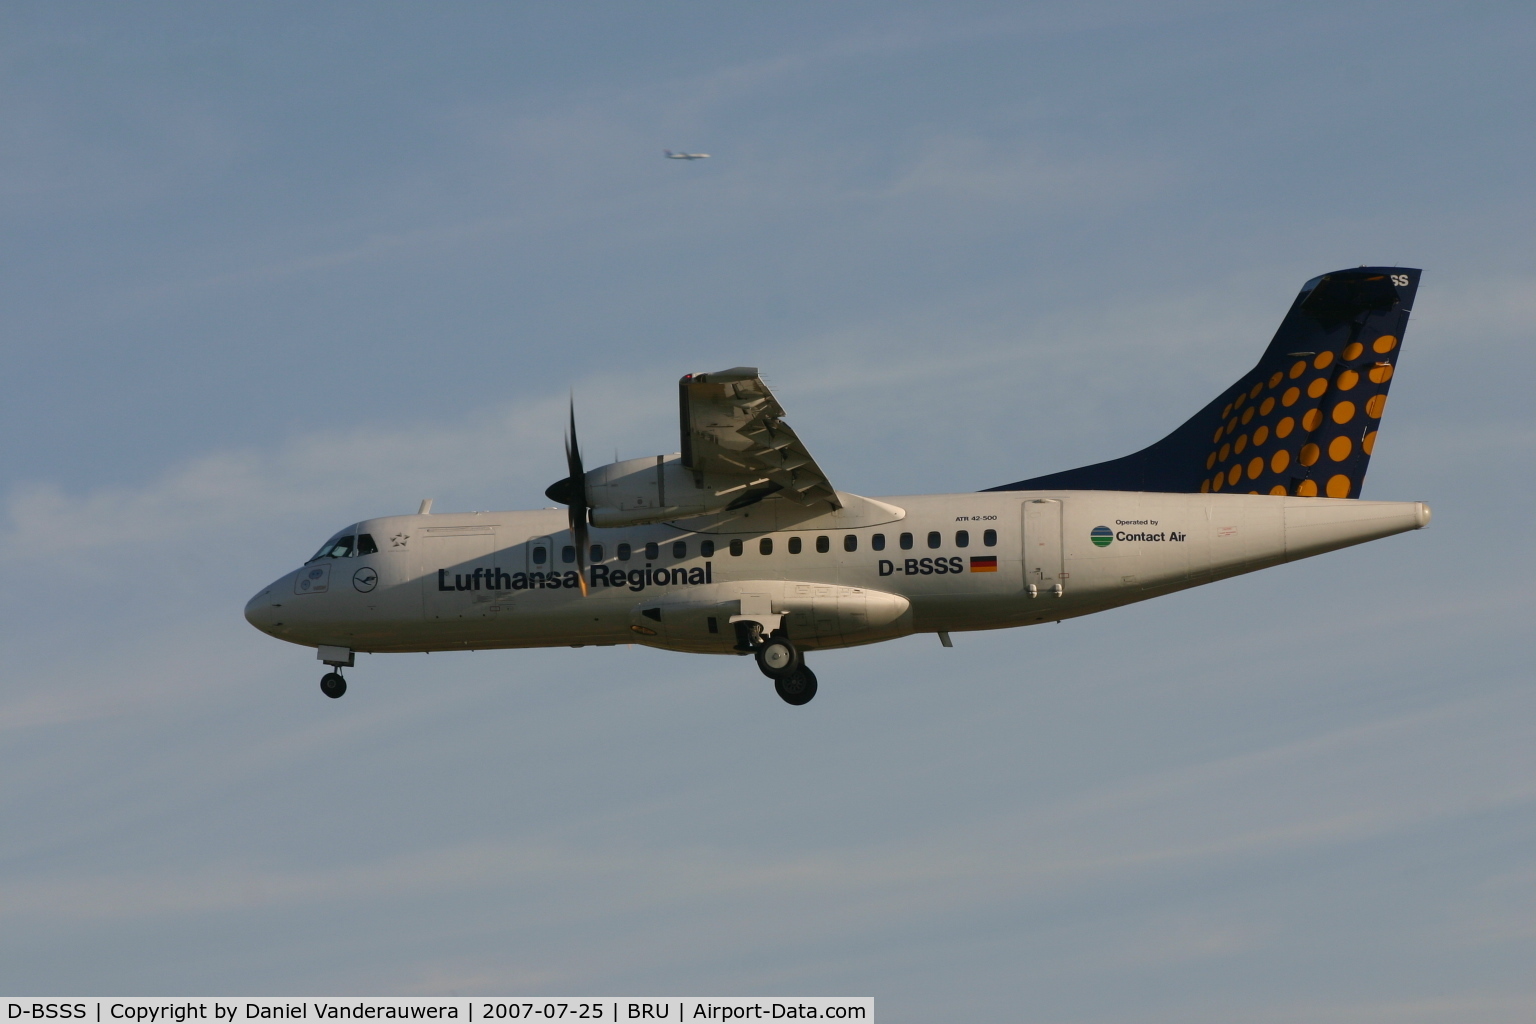 D-BSSS, 1999 ATR 42-500 C/N 602, arrival of flight LH4650 on rwy 25L